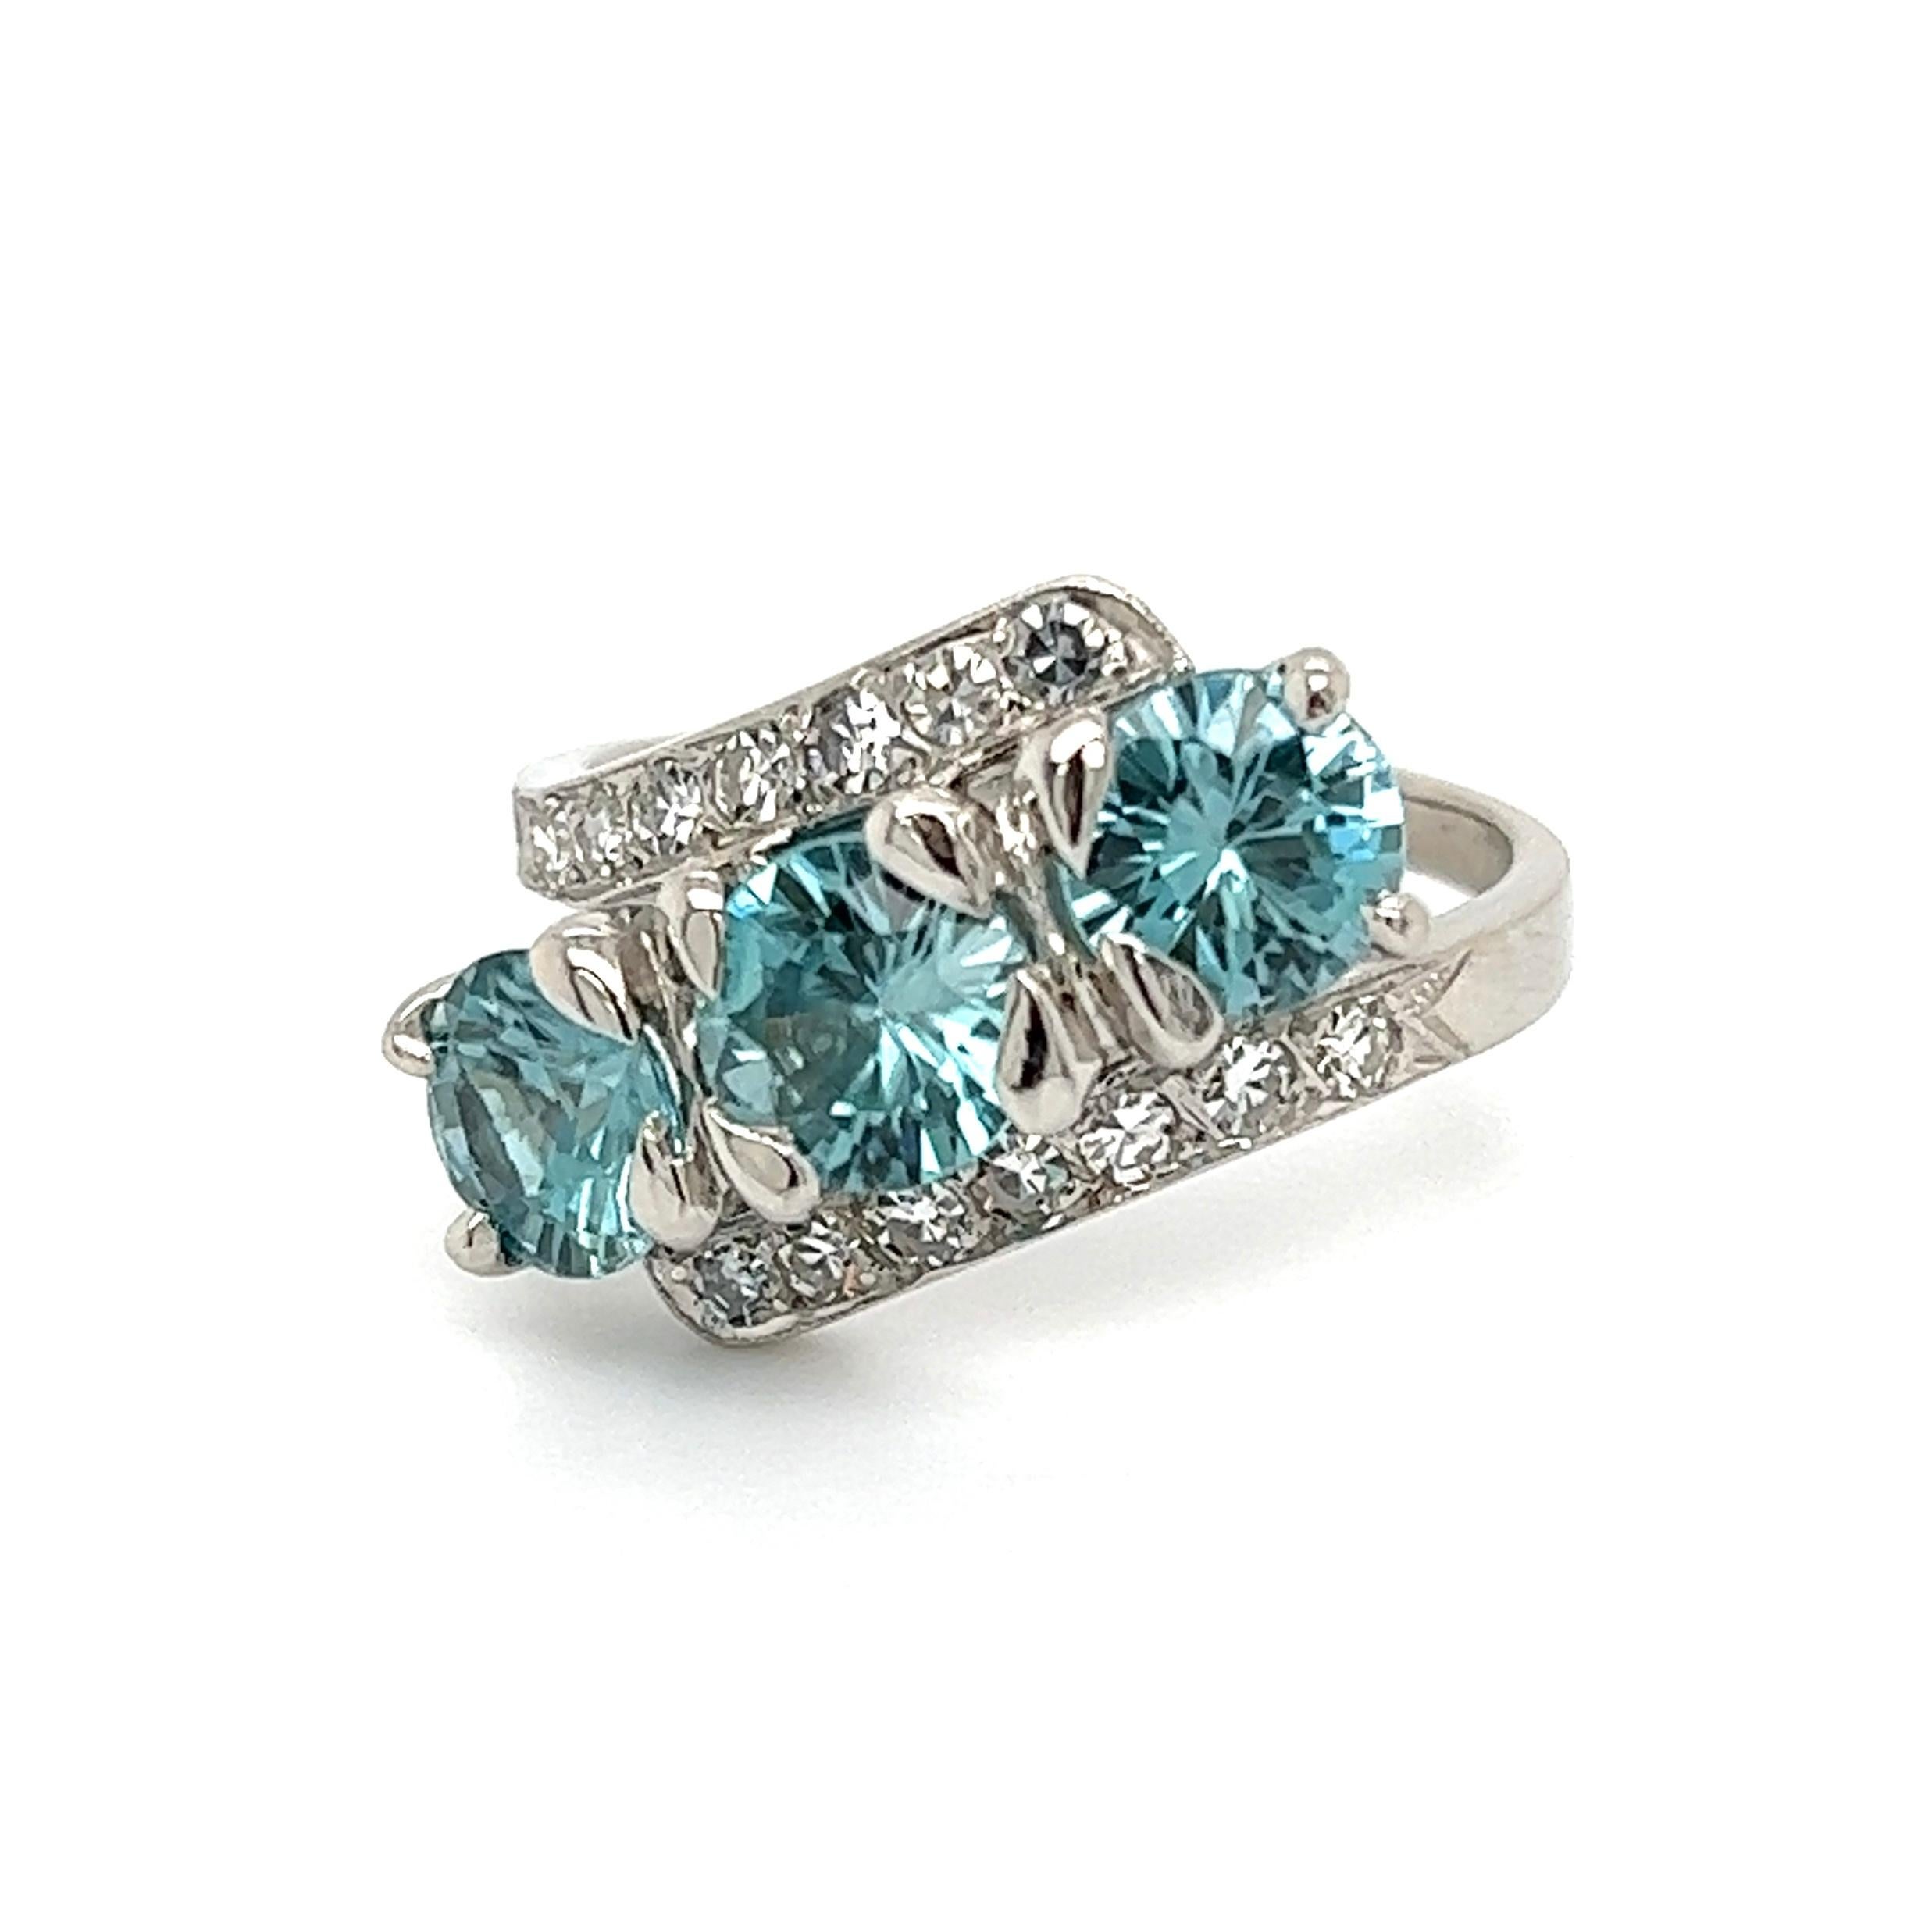 Einfach schön! Fein gearbeiteter Dreistein-Ring mit blauem Zirkon und Diamant. Von Hand gefasste 3 blaue Zirkone mit einem Gewicht von ca. 4,55 tcw, veredelt mit Diamanten mit einem Gewicht von ca. 0,50 tcw. Ringgröße: 6,5, wir bieten eine